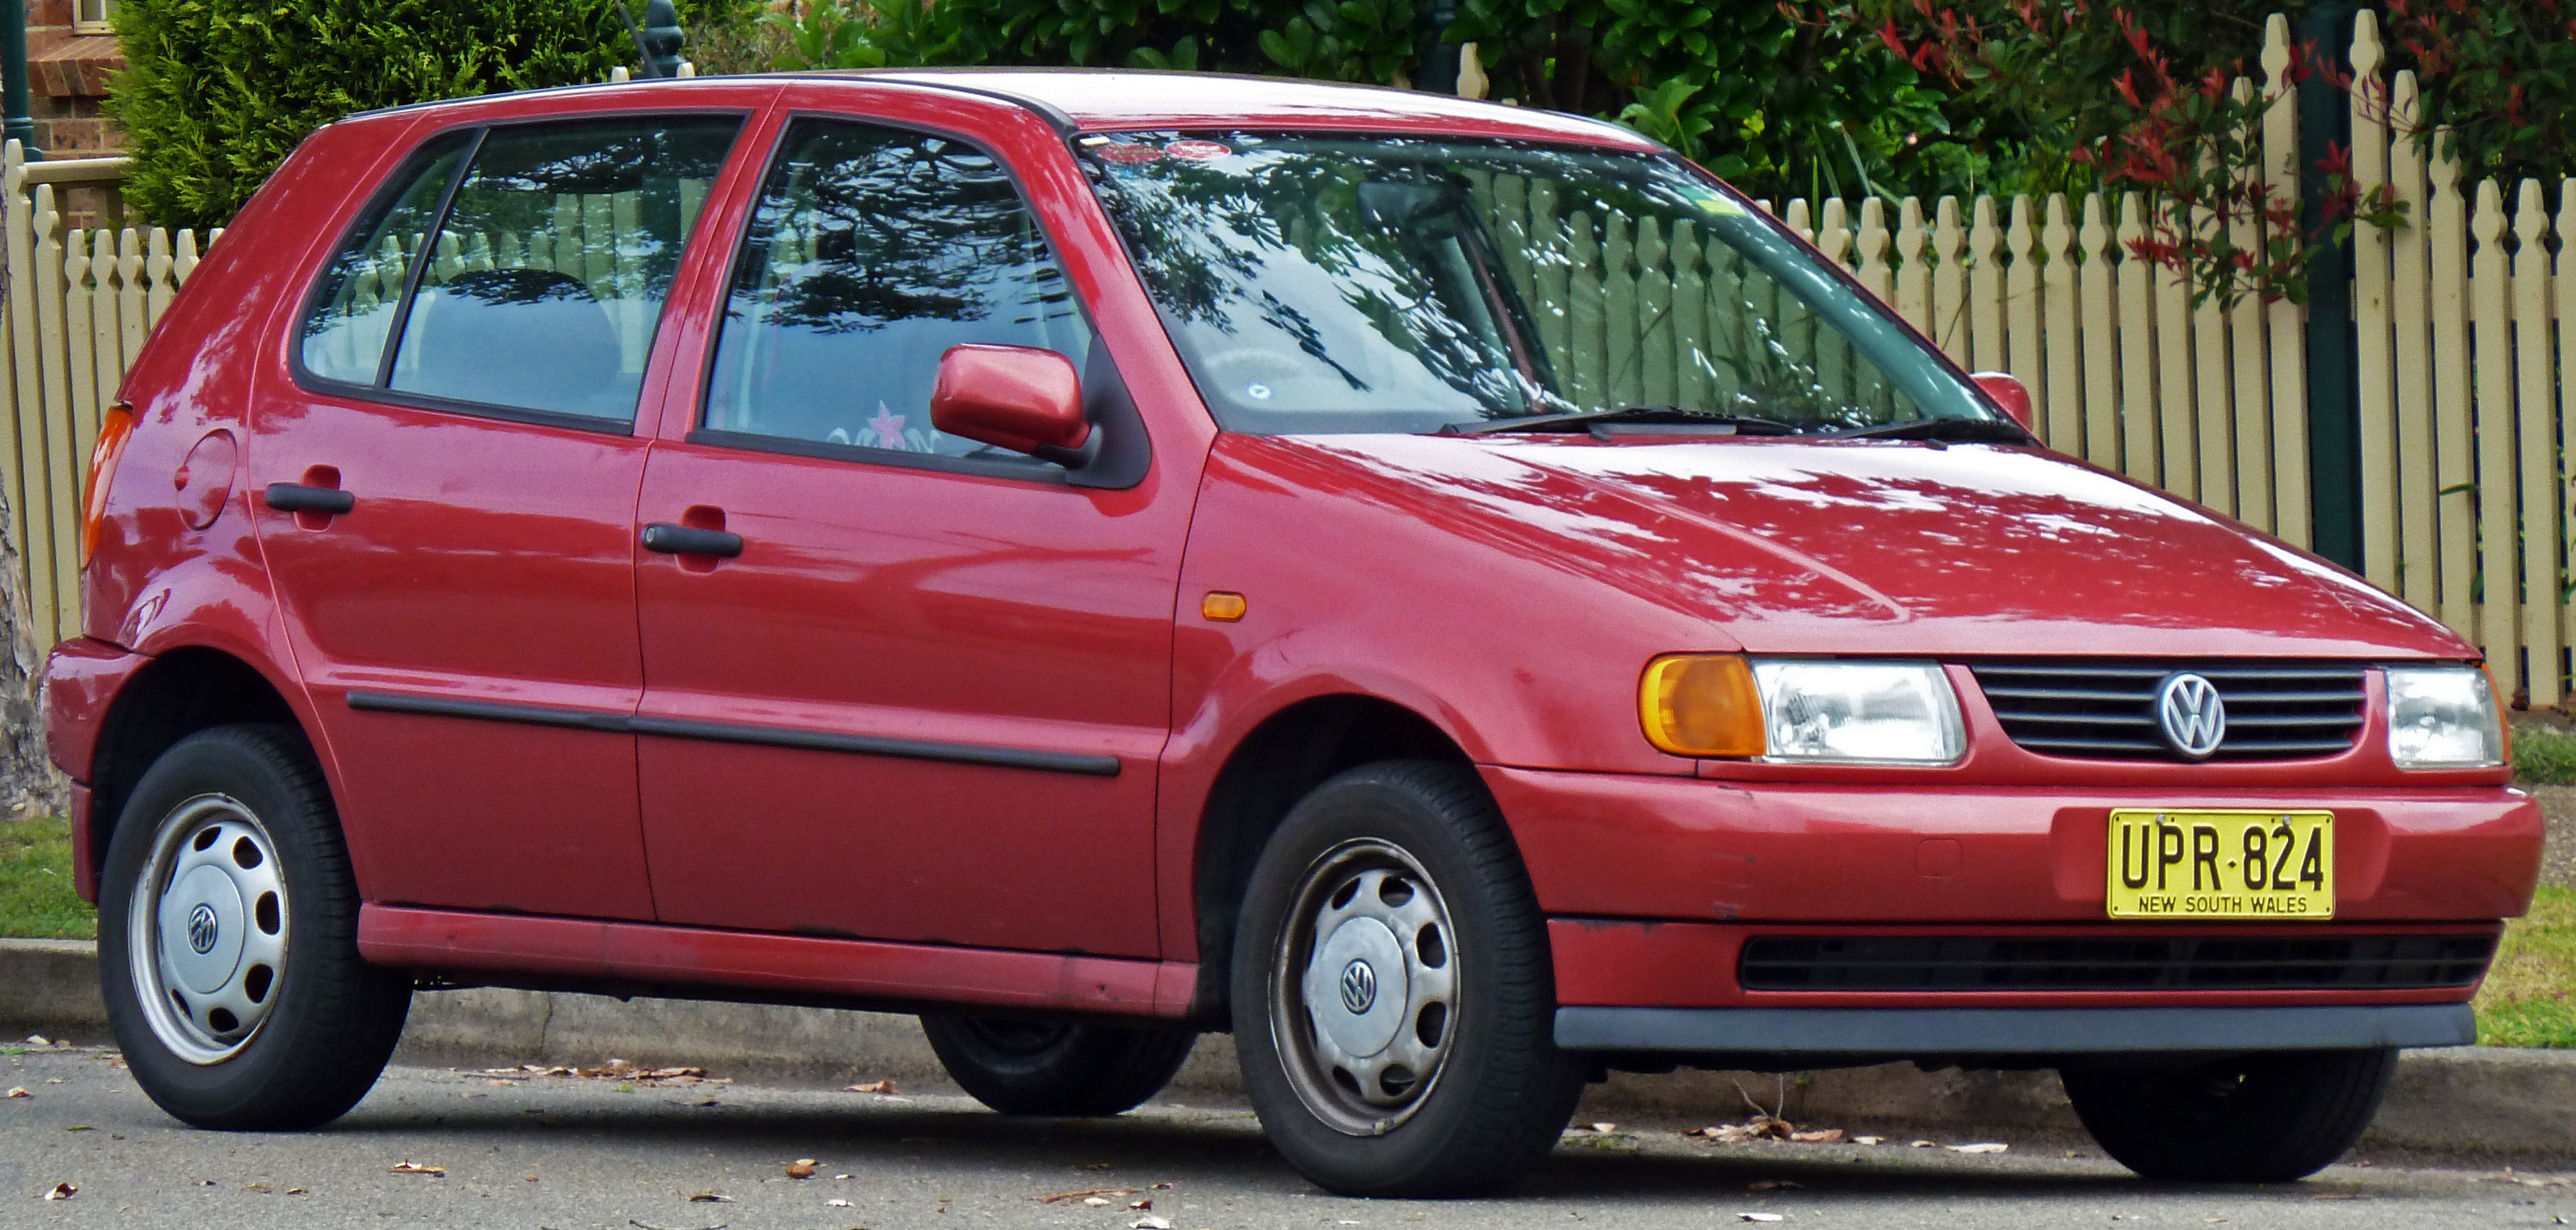 File:1997 Volkswagen Polo (6N) 5-door hatchback (2010-09-23).jpg -  Wikimedia Commons